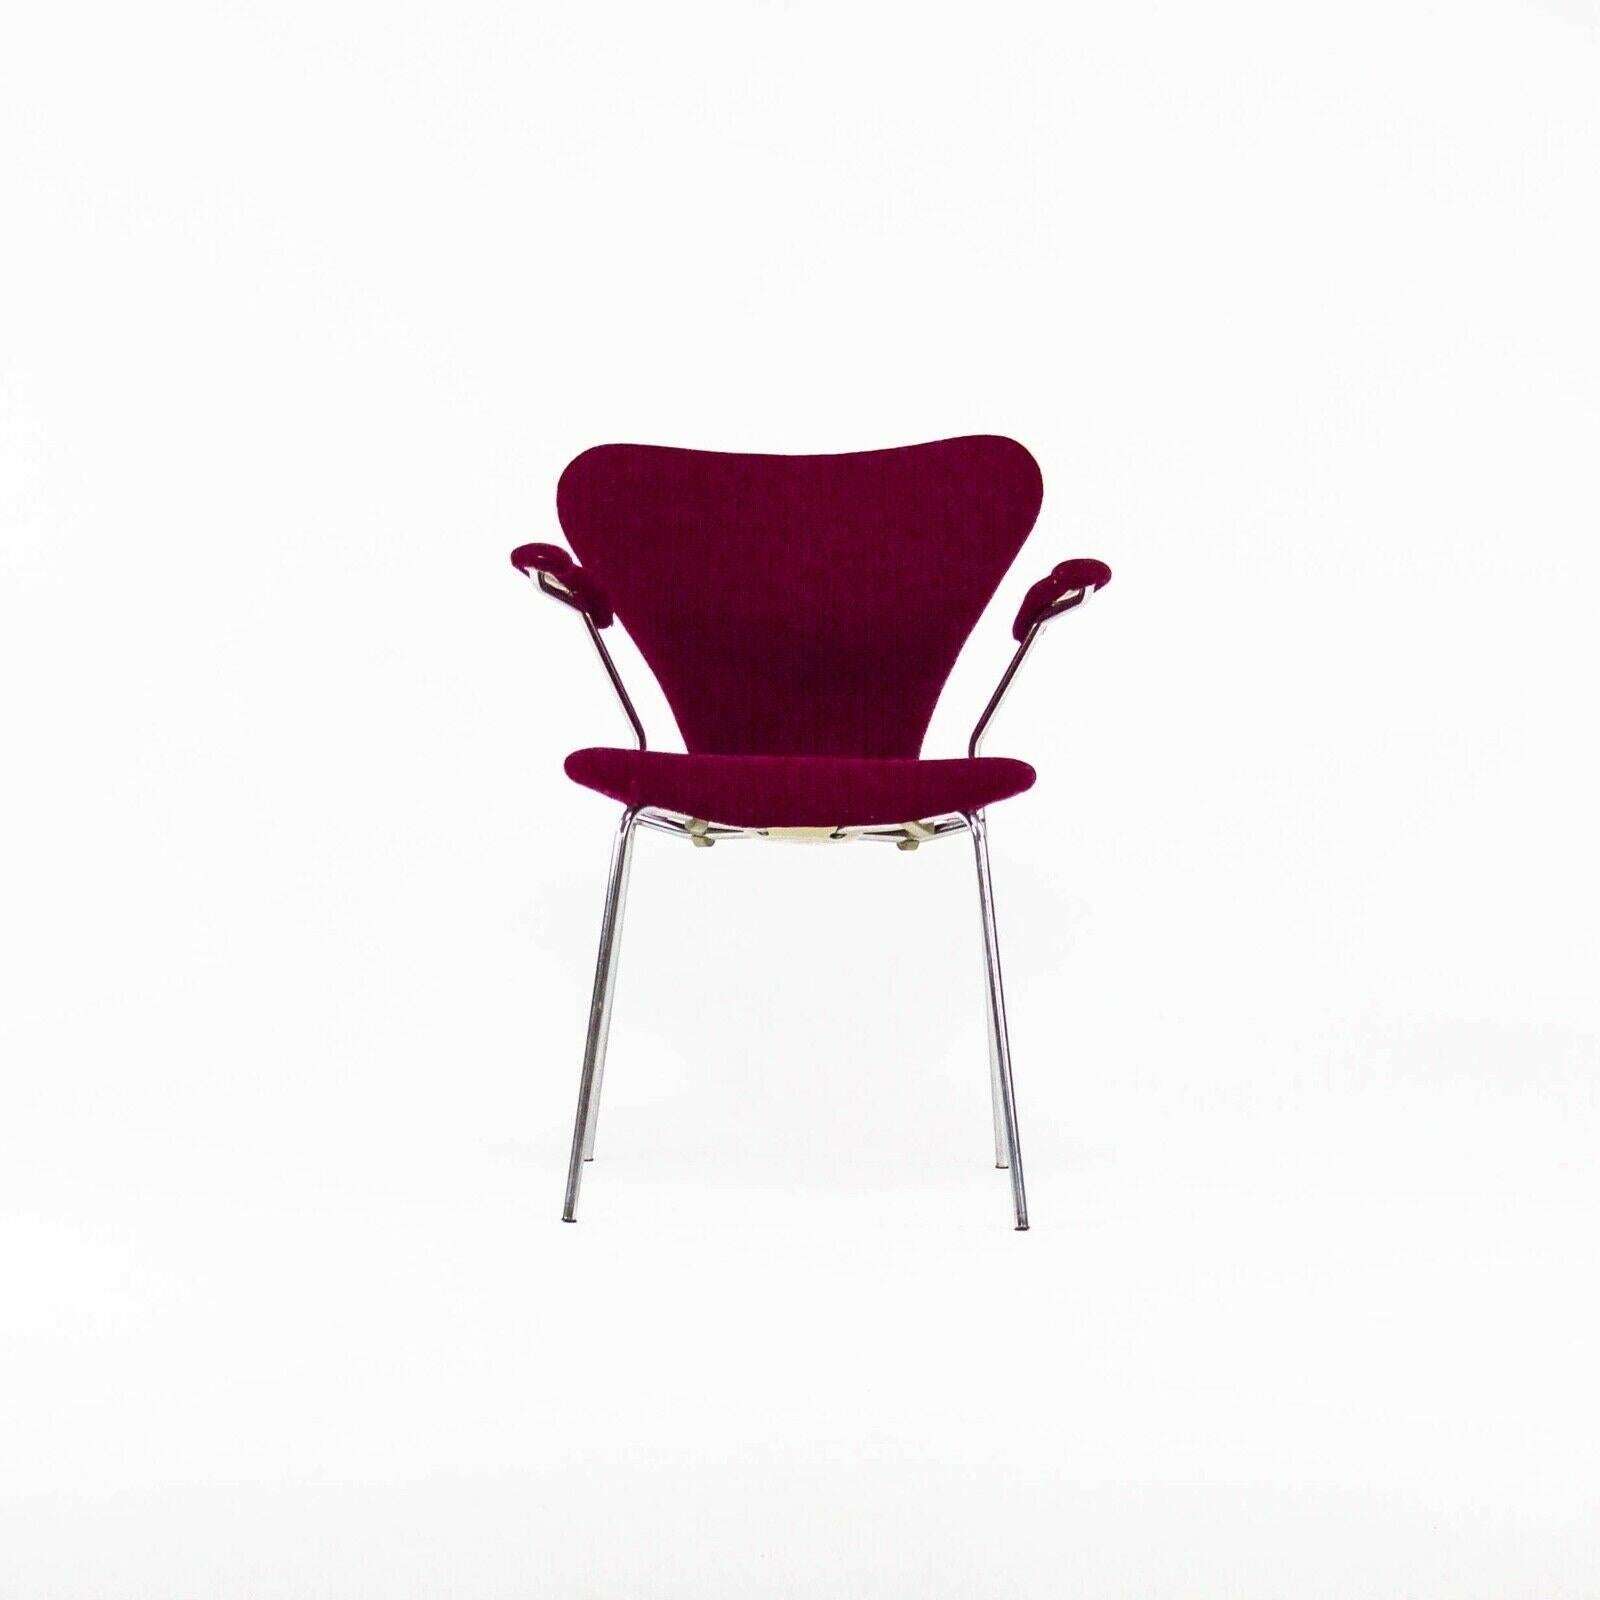 Zum Verkauf steht ein Satz von drei Stühlen der Serie 7 mit Armlehnen, entworfen vom berühmten Architekten Arne Jacobsen, hergestellt von Fritz Hansen. Diese Exemplare stammen aus einem Nachlass im Raum Boston/Cambridge und wurden 1976 hergestellt.